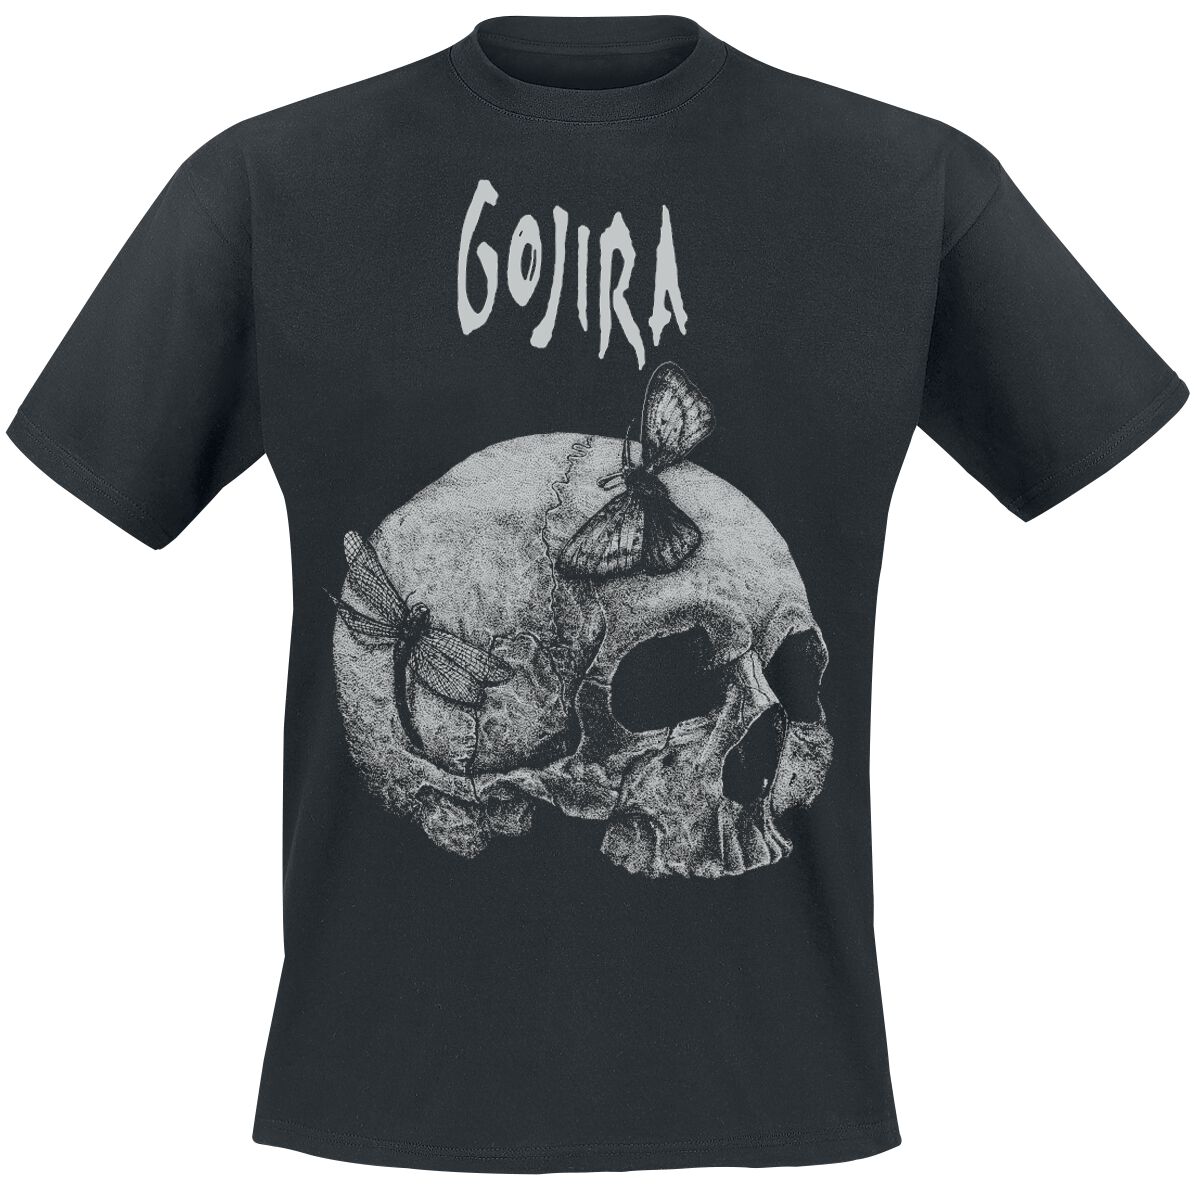 Gojira T-Shirt - Moth Skull - S bis XXL - für Männer - Größe XXL - schwarz  - Lizenziertes Merchandise!